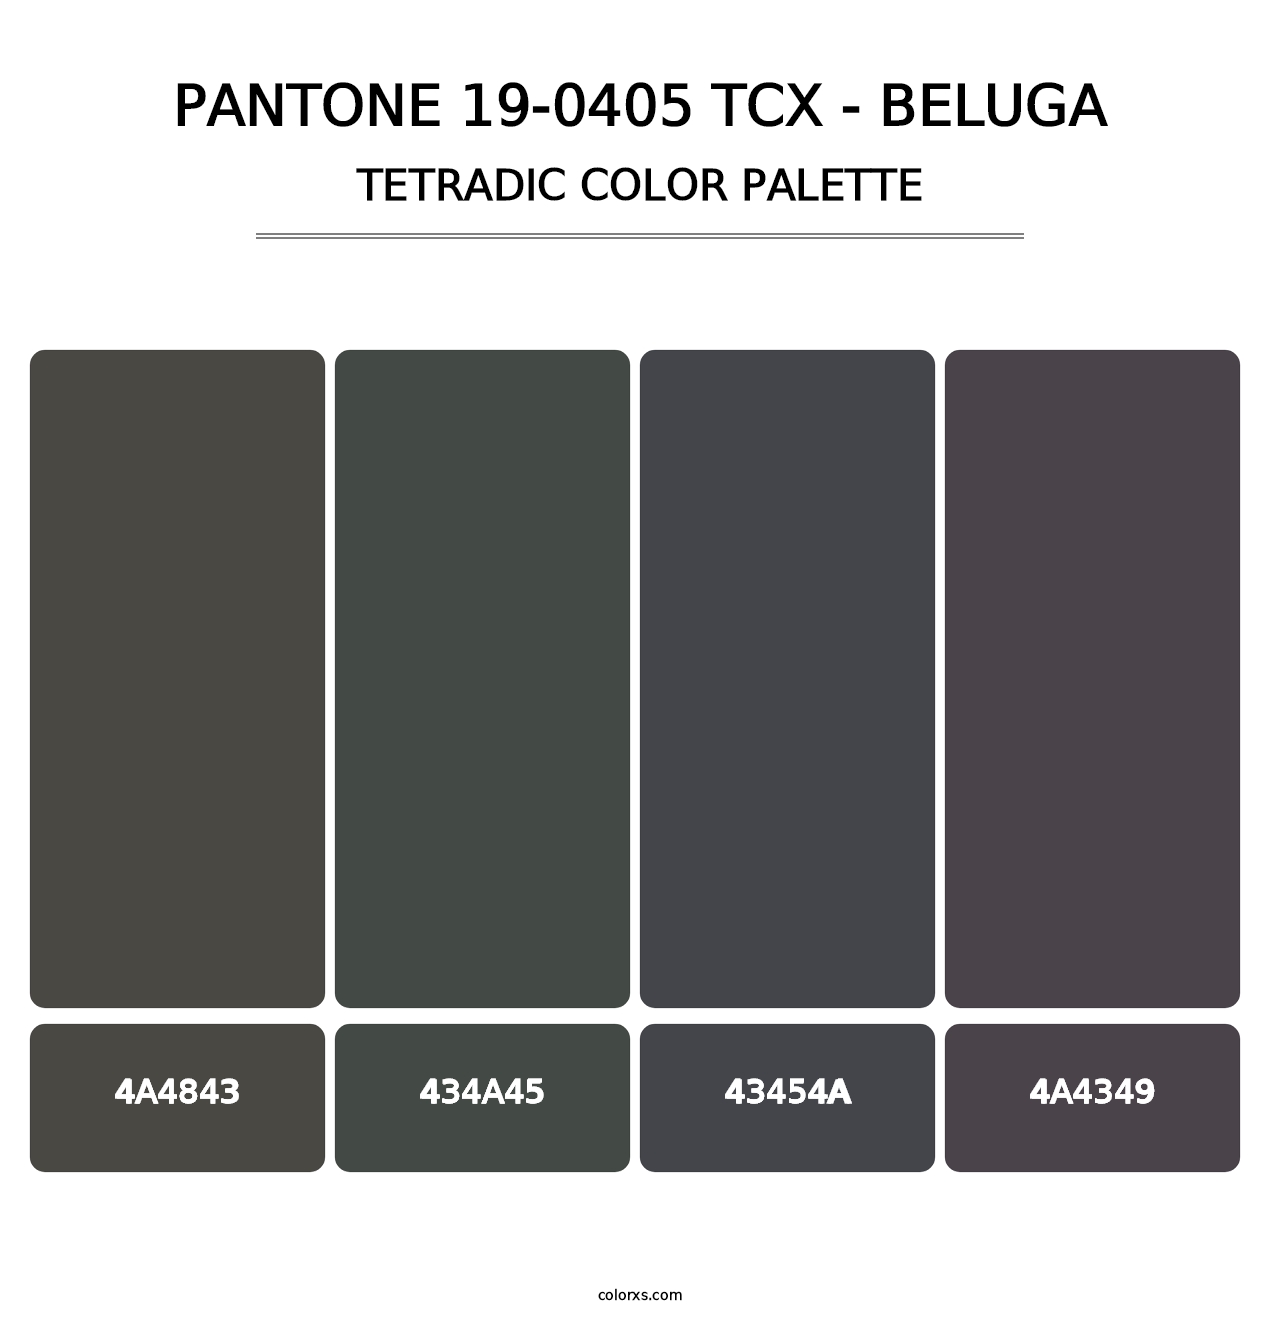 PANTONE 19-0405 TCX - Beluga - Tetradic Color Palette